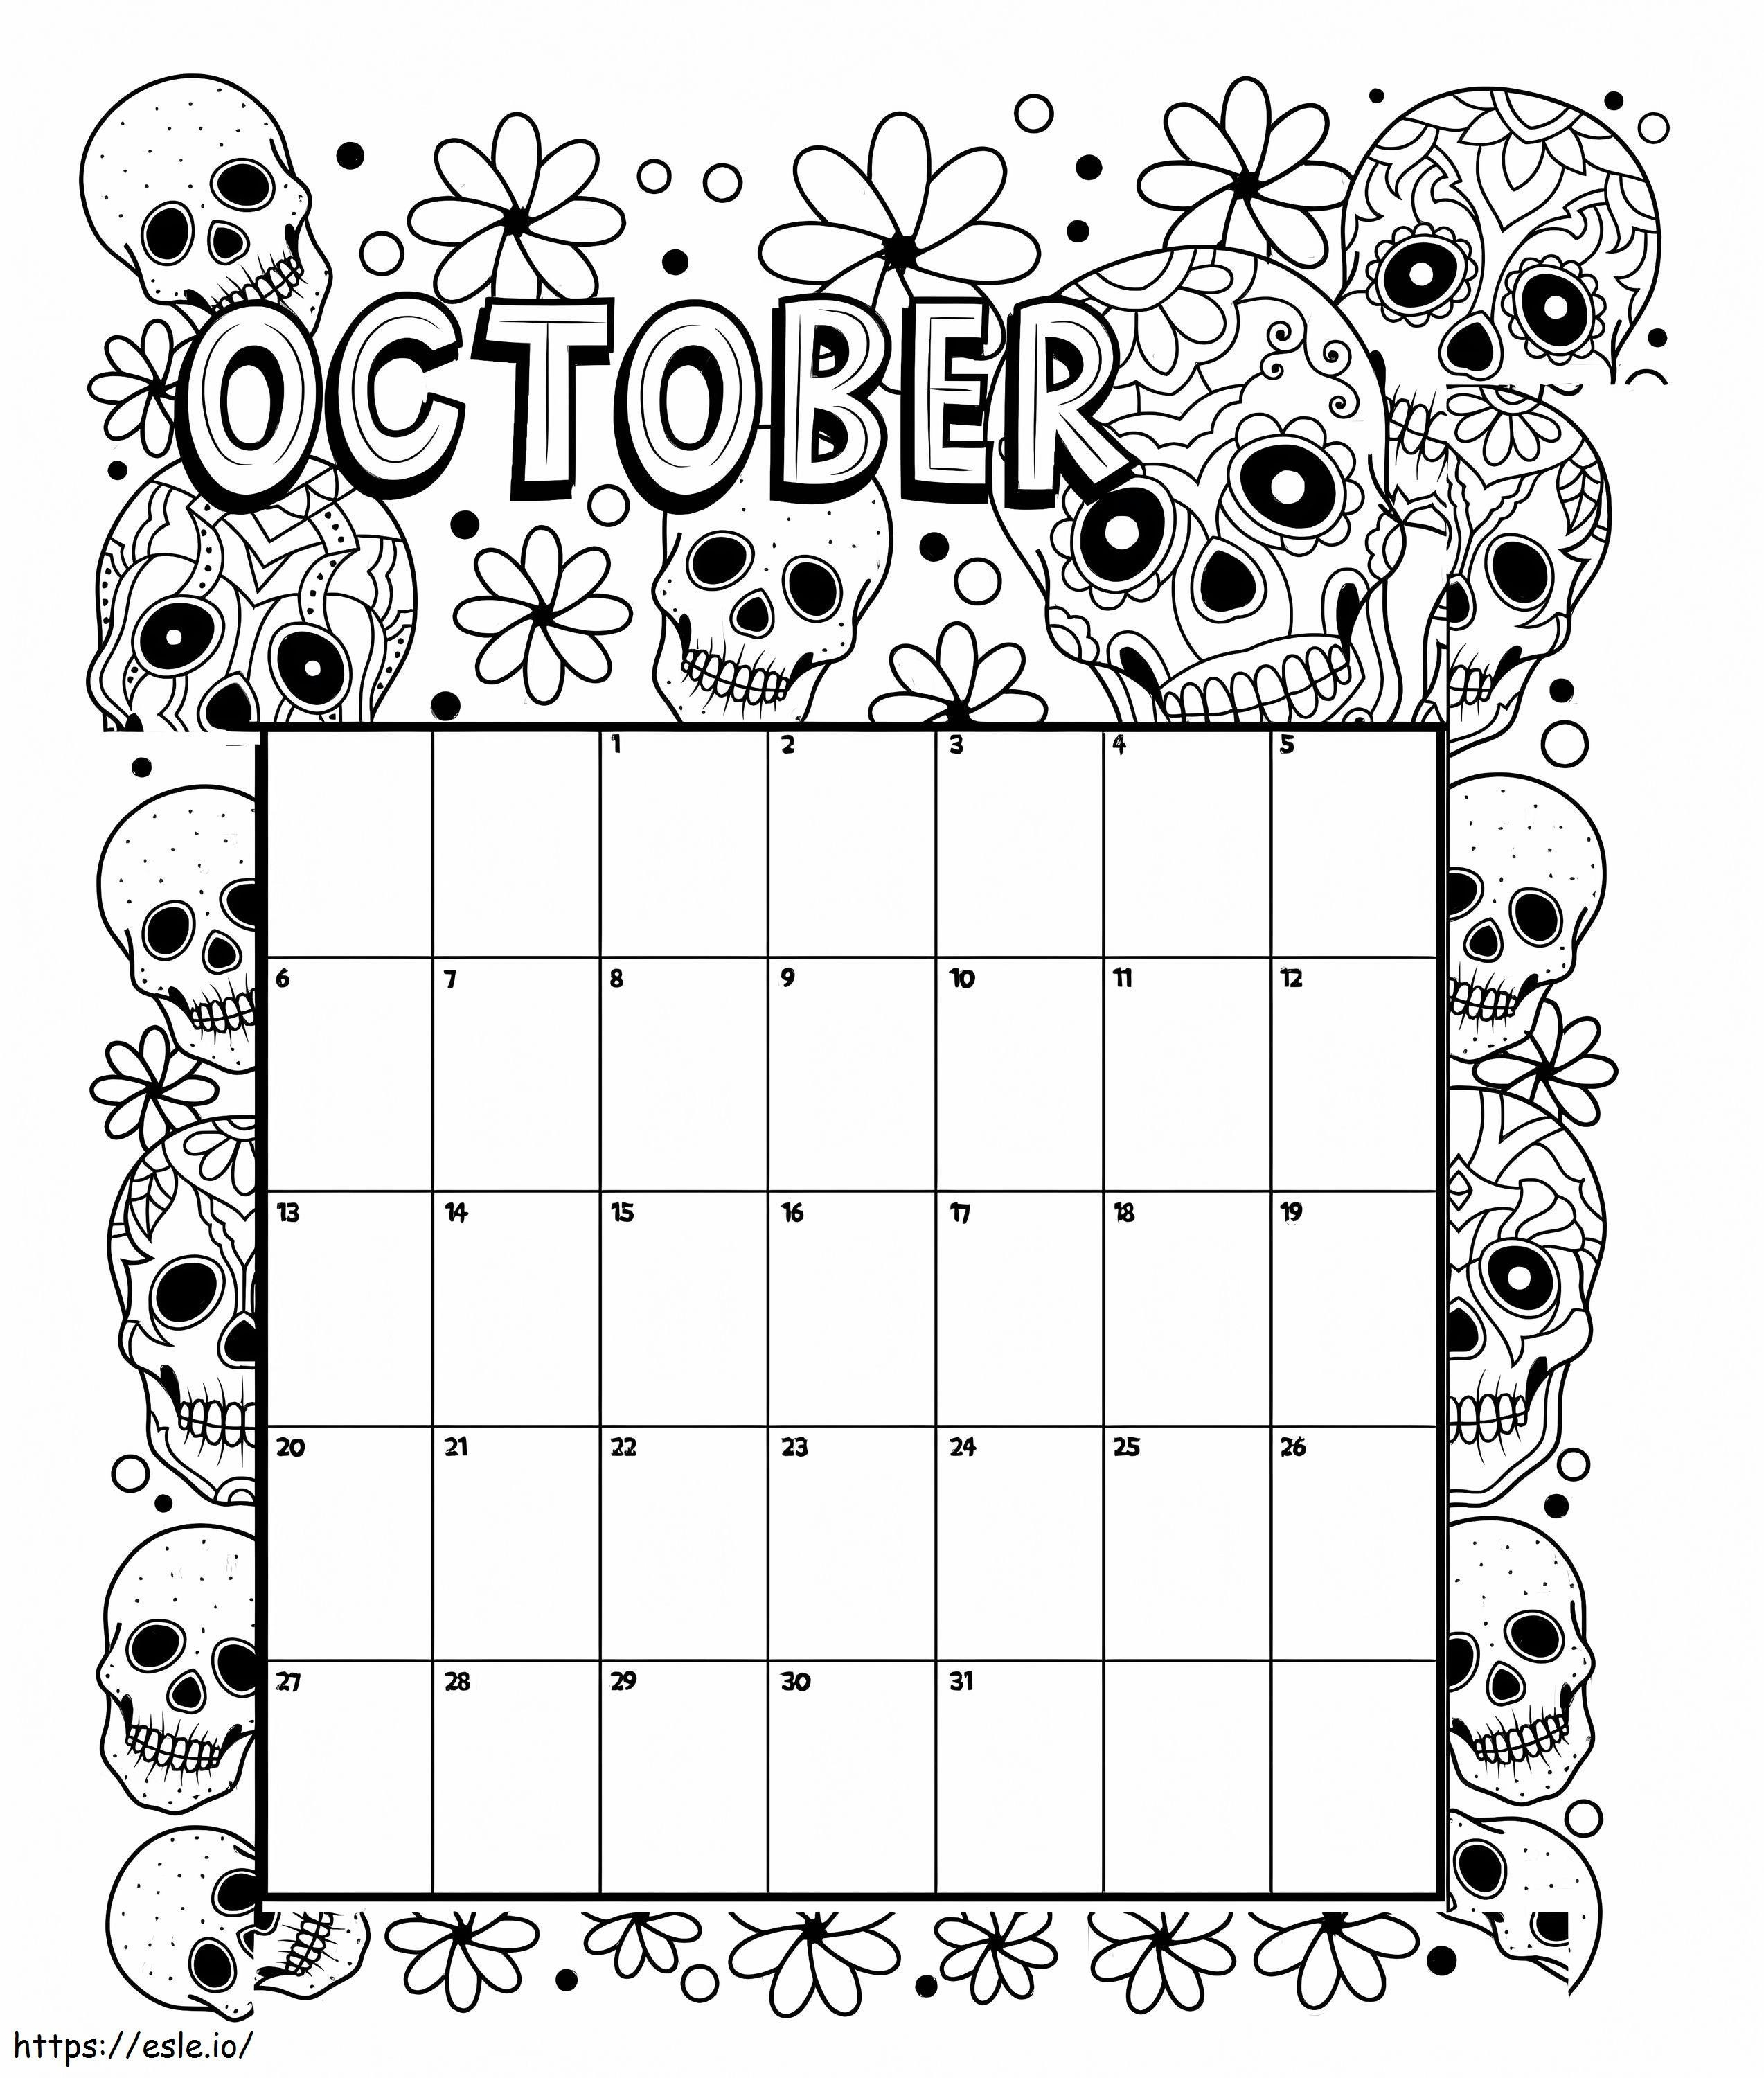 Calendario de Halloween de octubre para colorear